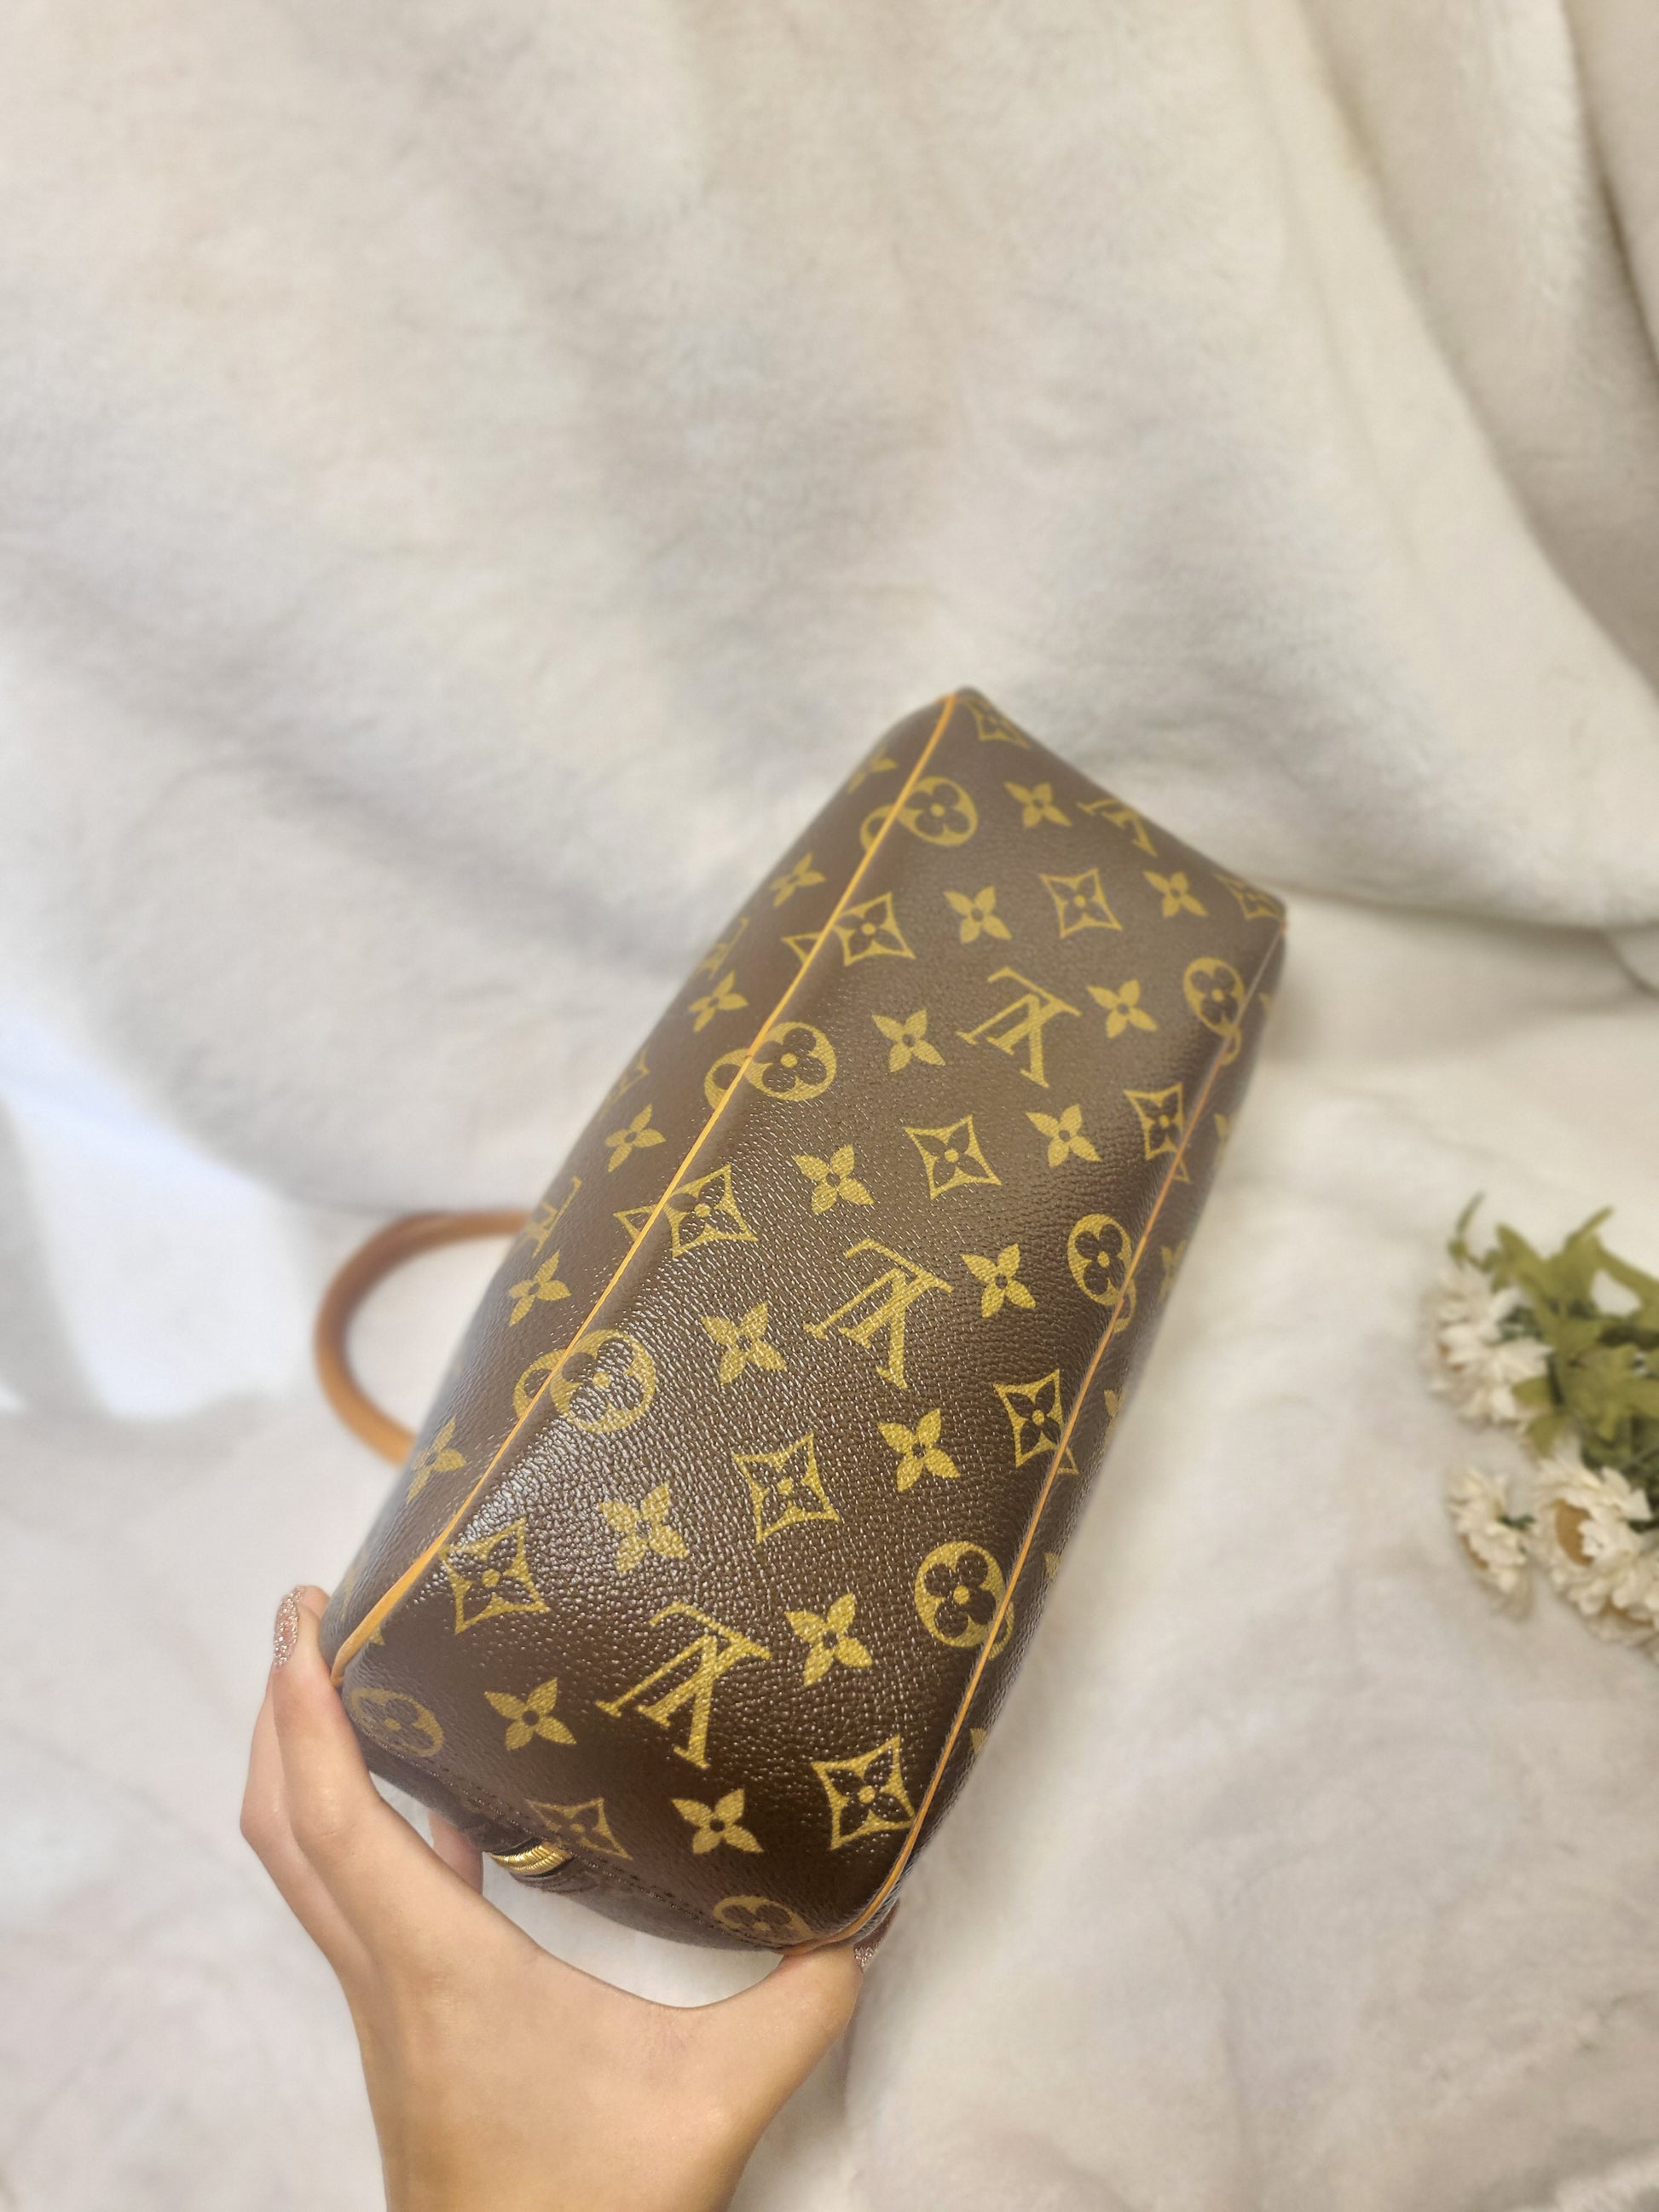 Louis Vuitton Monogram Trouville Small Bowler Bag – I MISS YOU VINTAGE